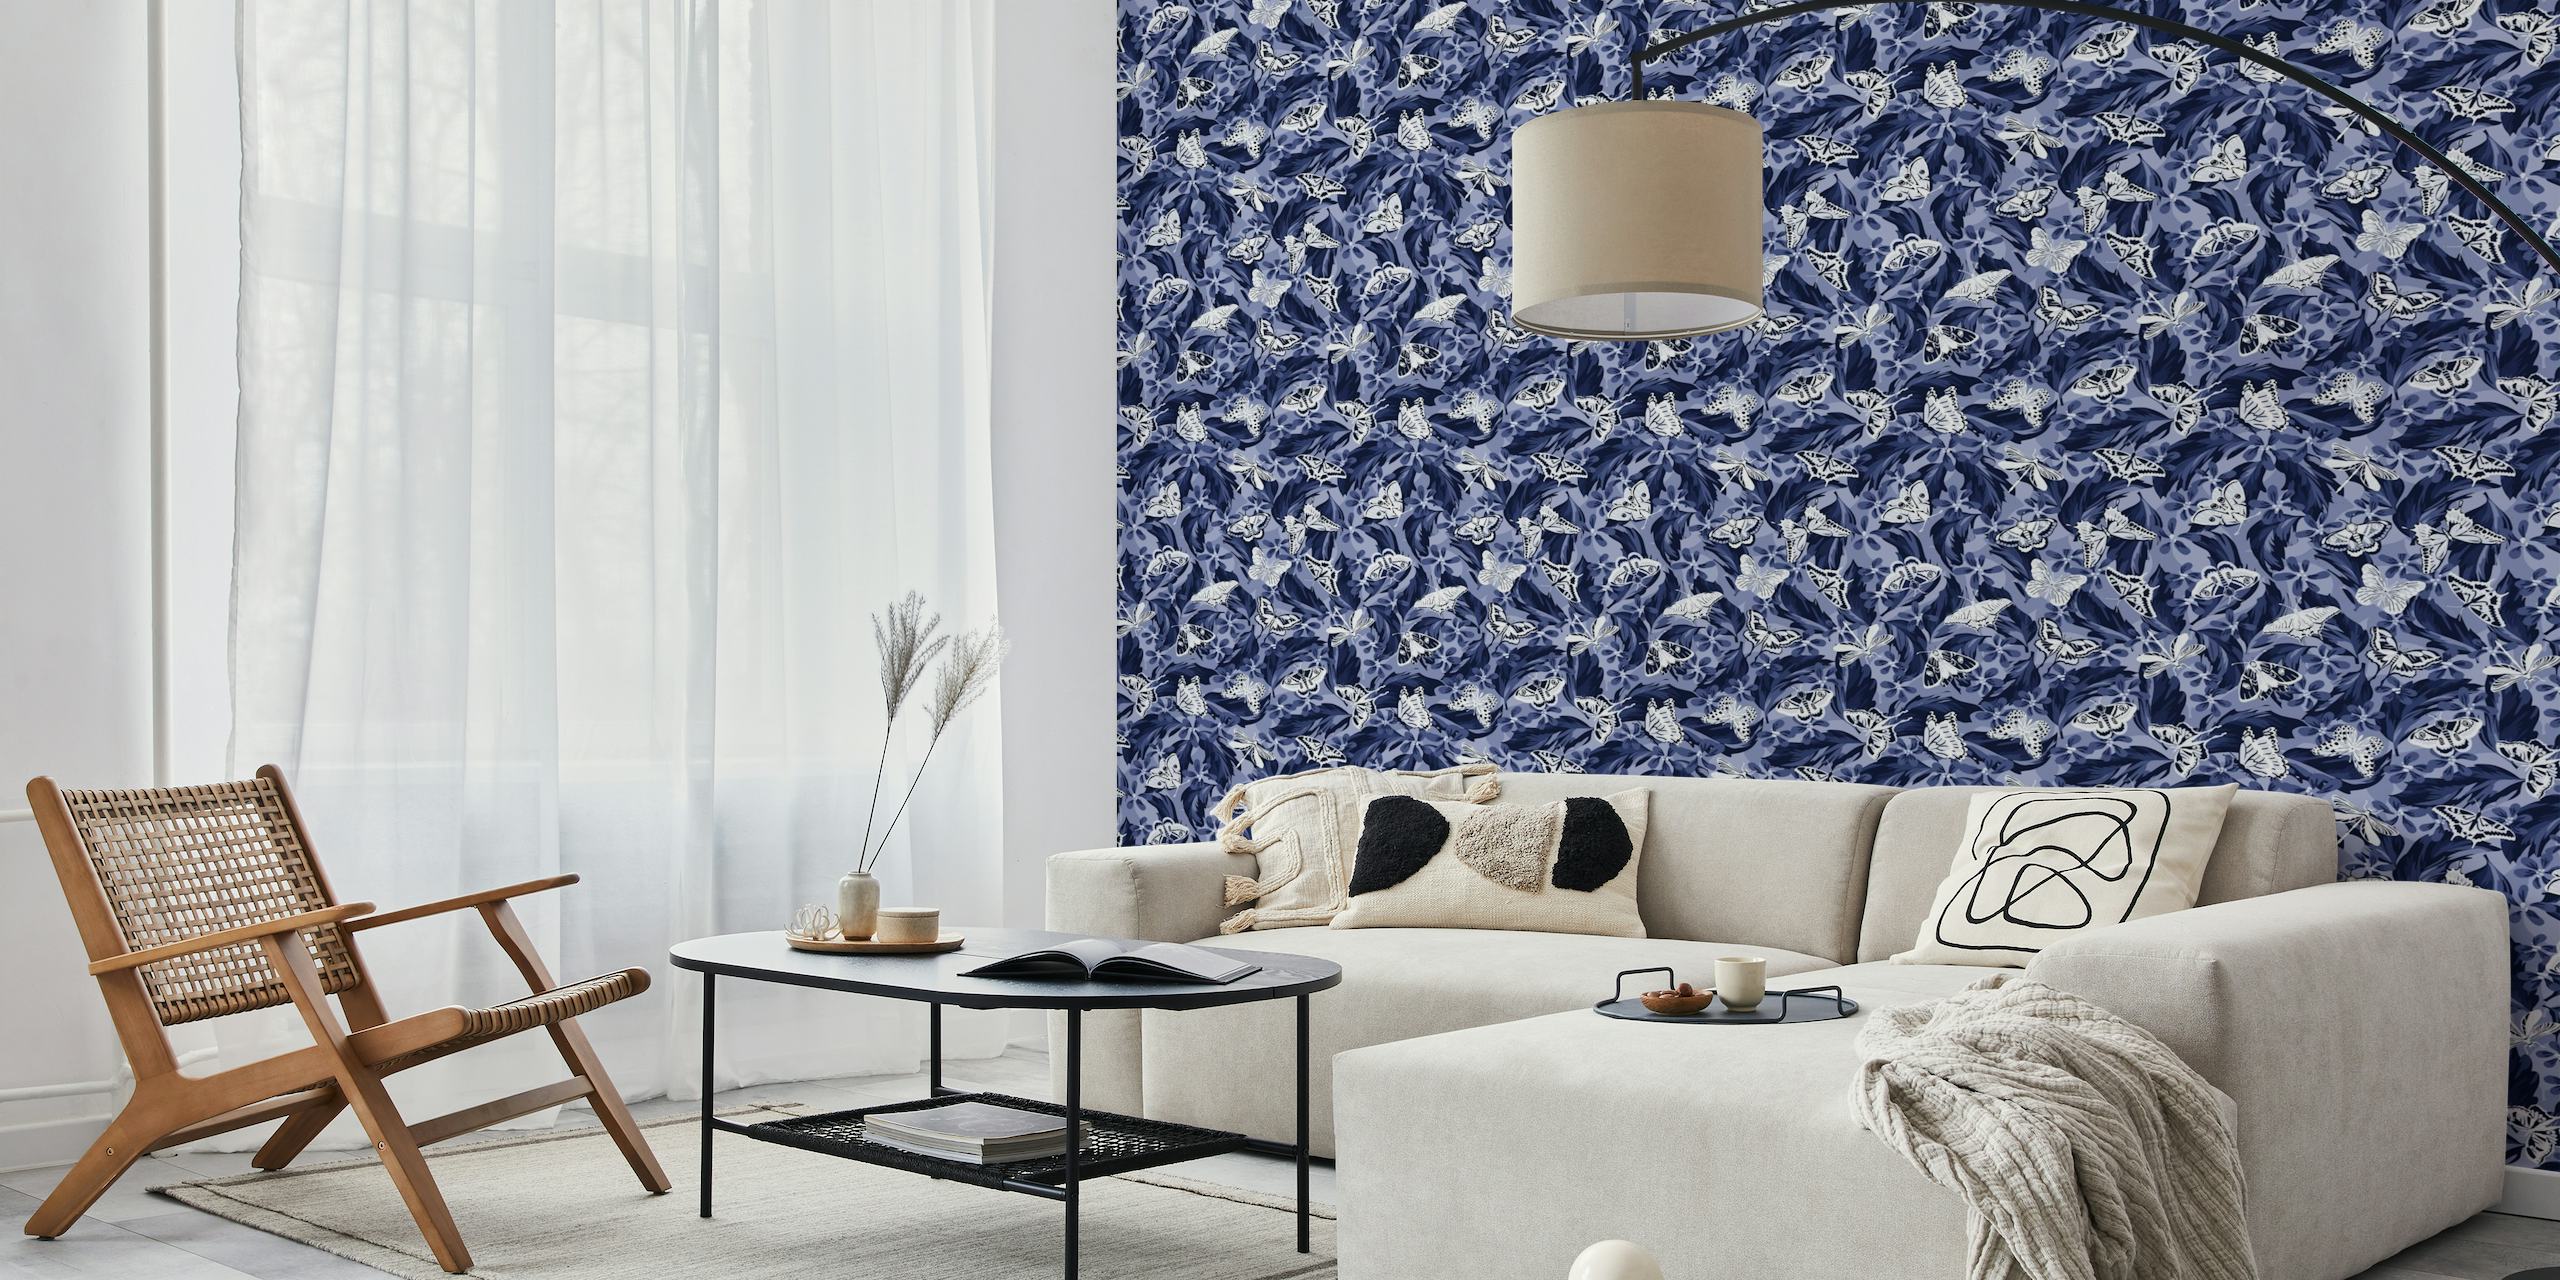 Seinämaalaus, jossa on sinisiä ja valkoisia perhosia tummansinisten lehtien taustalla, mikä luo rauhallisen yömaiseman.